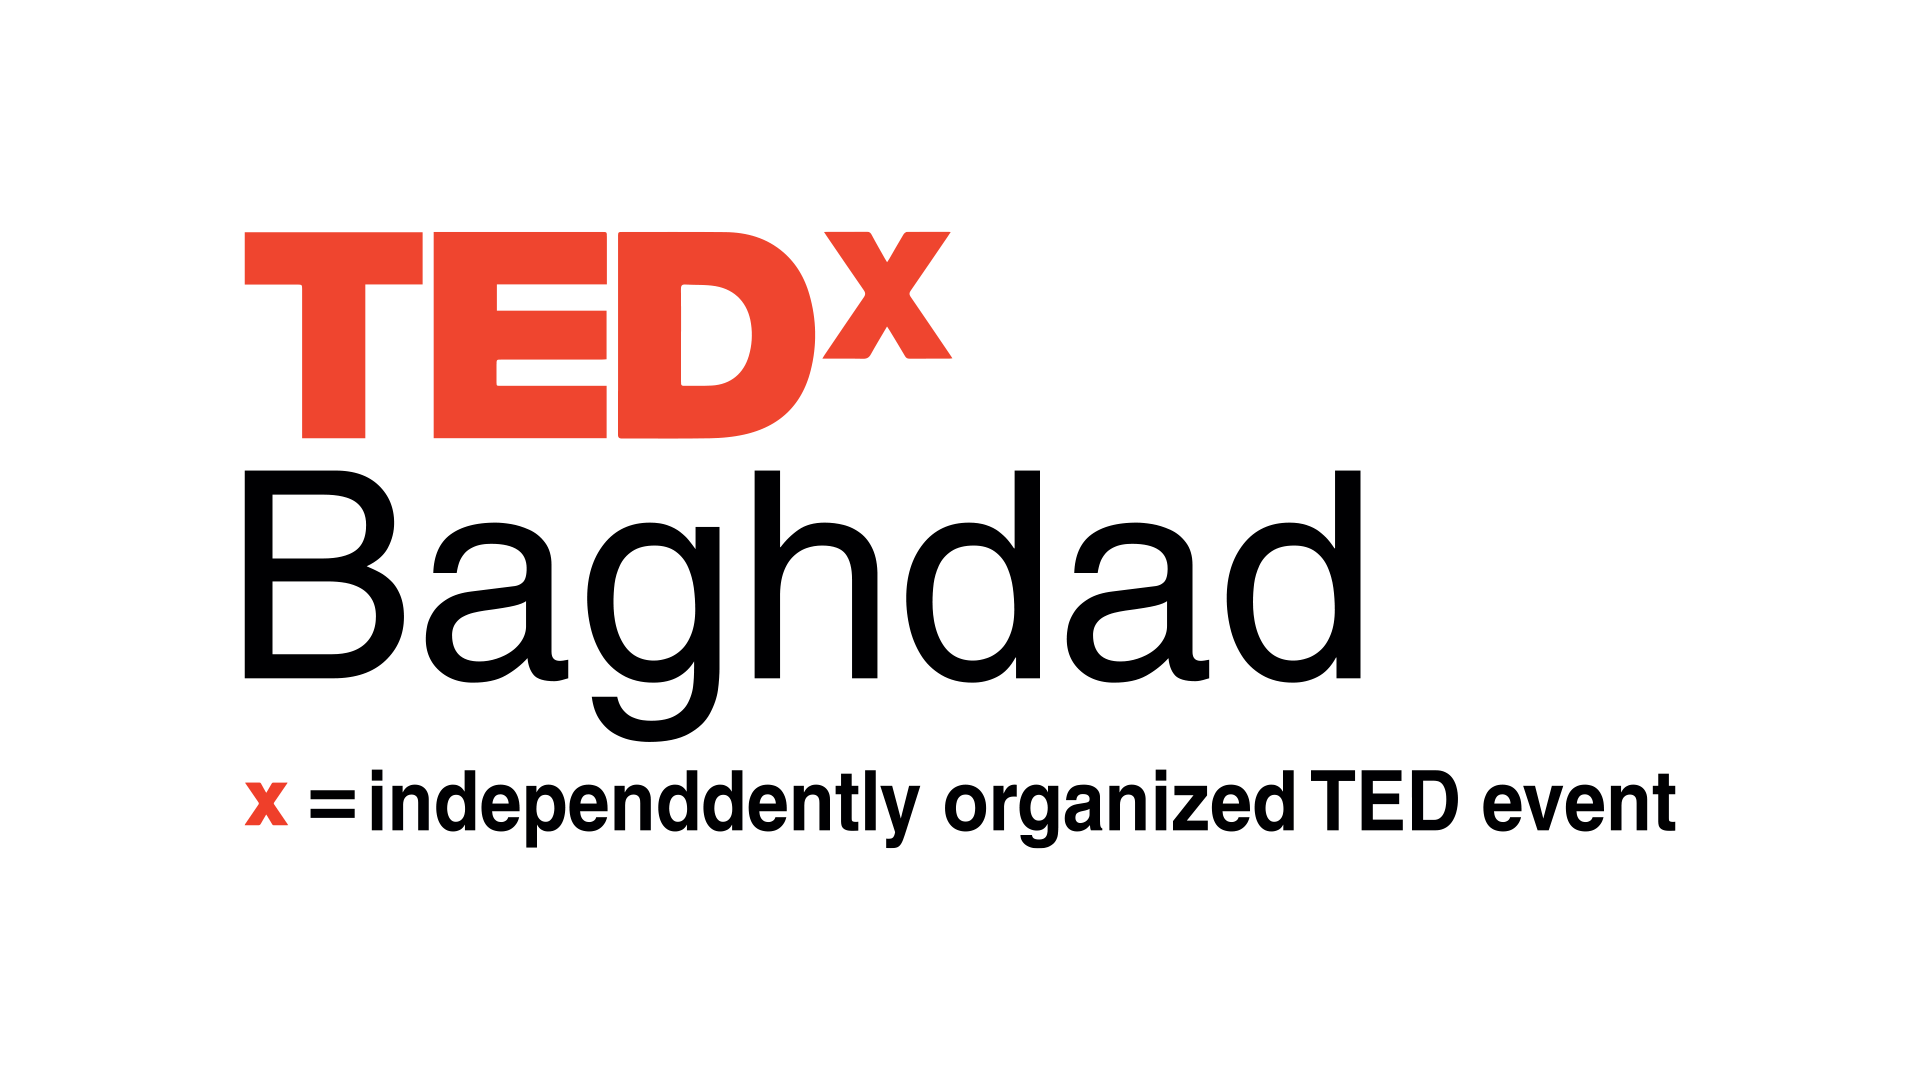 TEDX Baghdad تصميم اعلانات منظمة